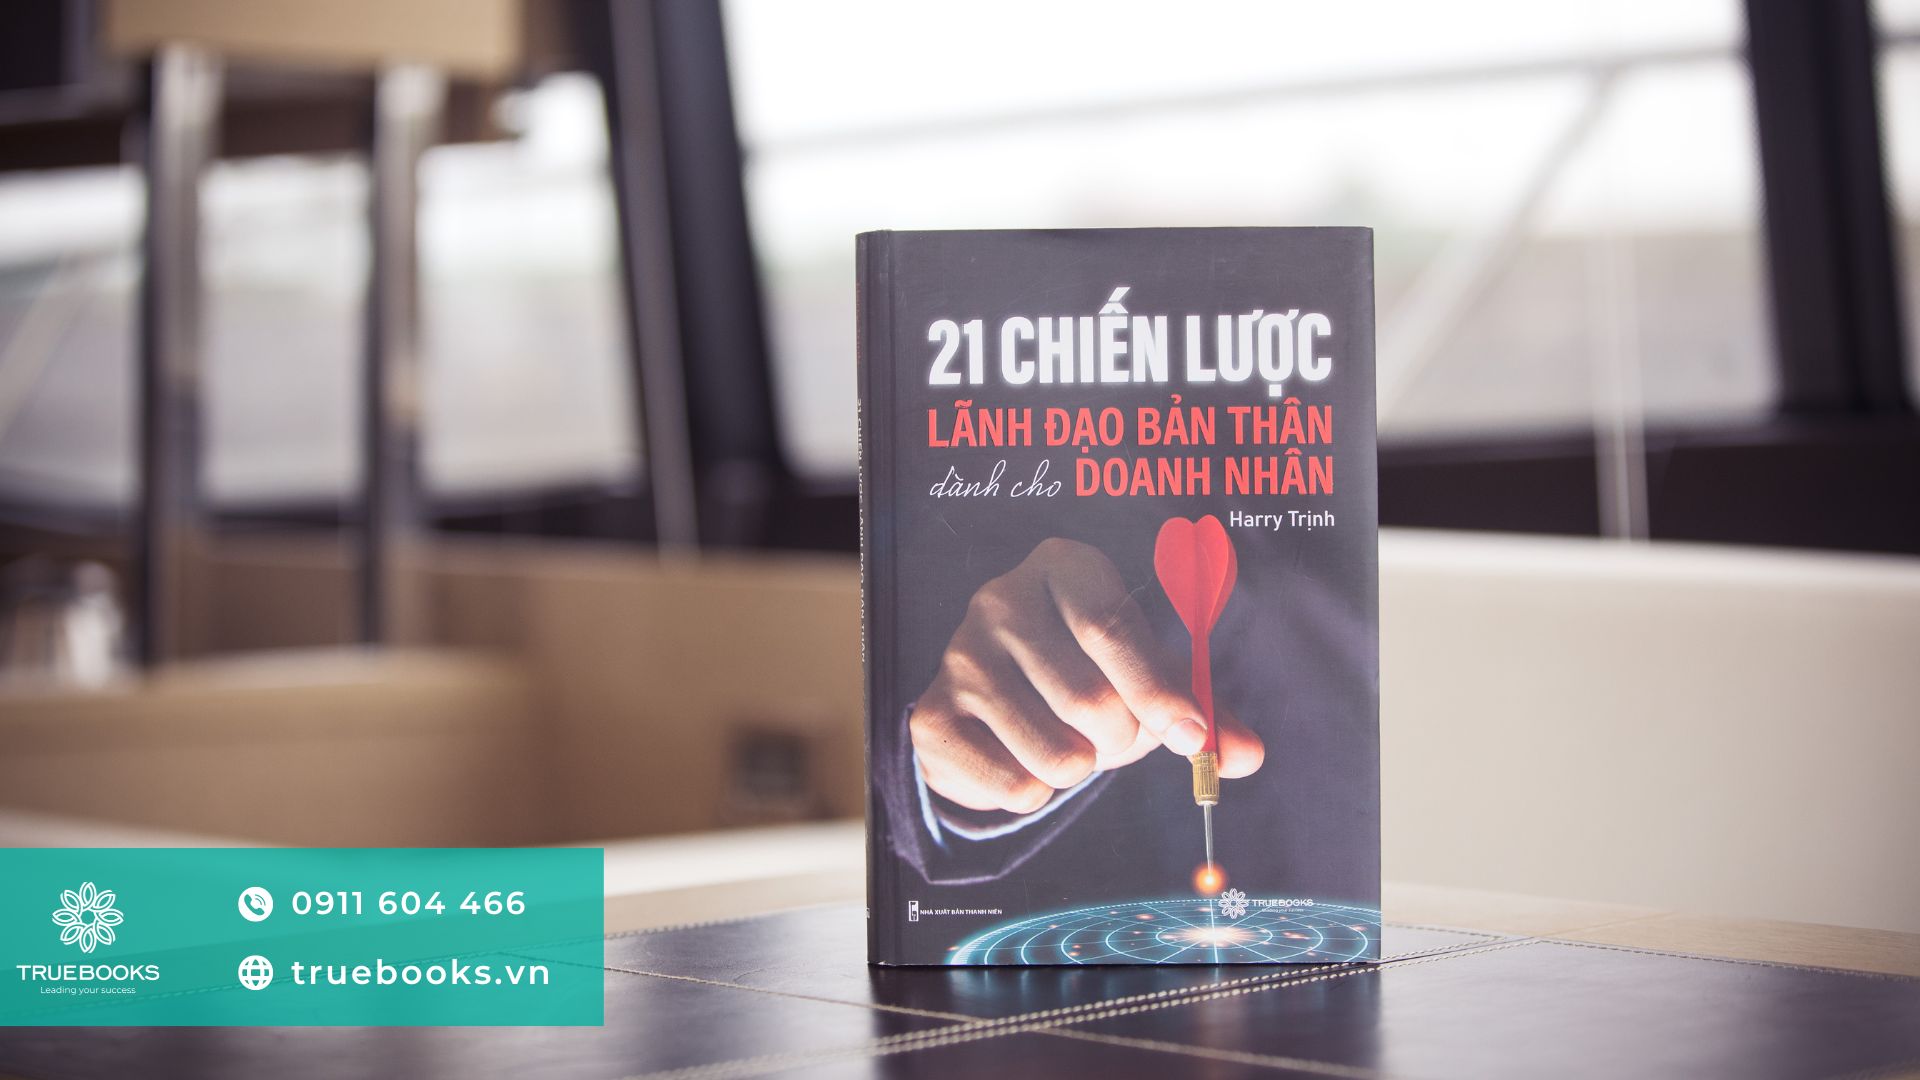 Top 3 những cuốn sách hay: 21 chiến lược lãnh đạo bản thân dành cho doanh nhân